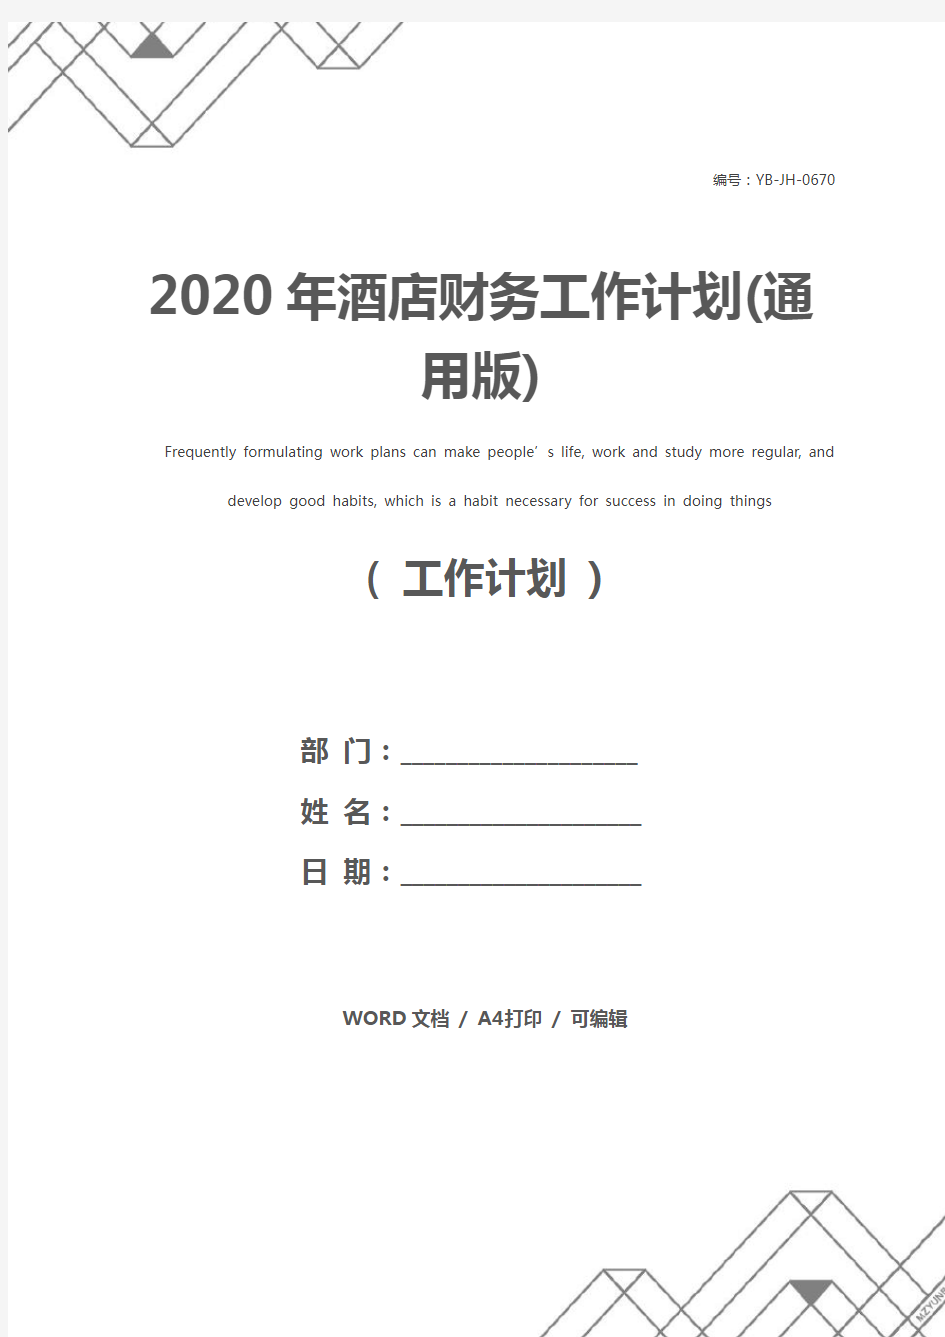 2020年酒店财务工作计划(通用版)